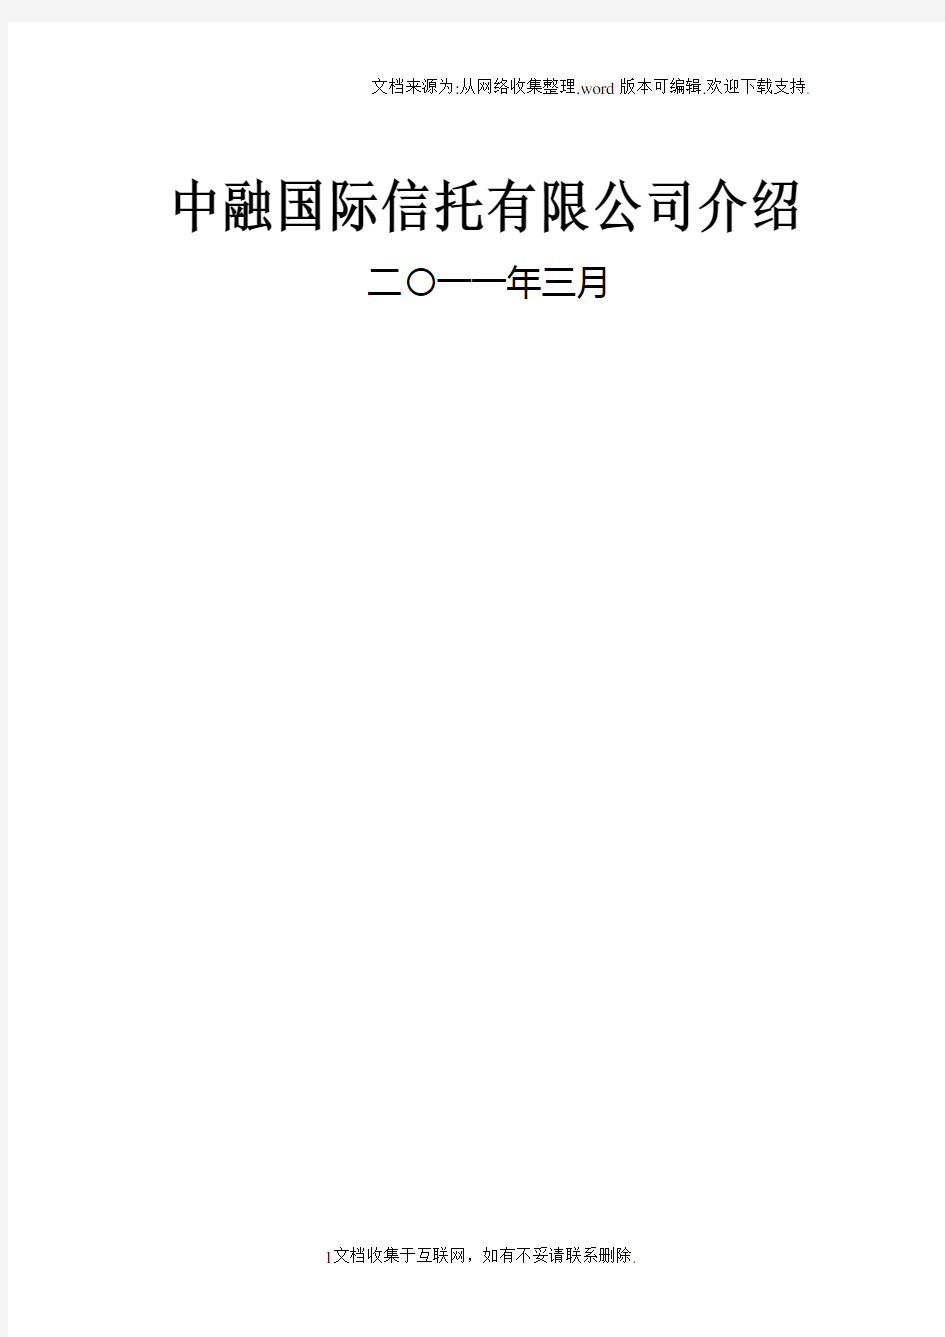 中融国际信托有限公司介绍(20110324)